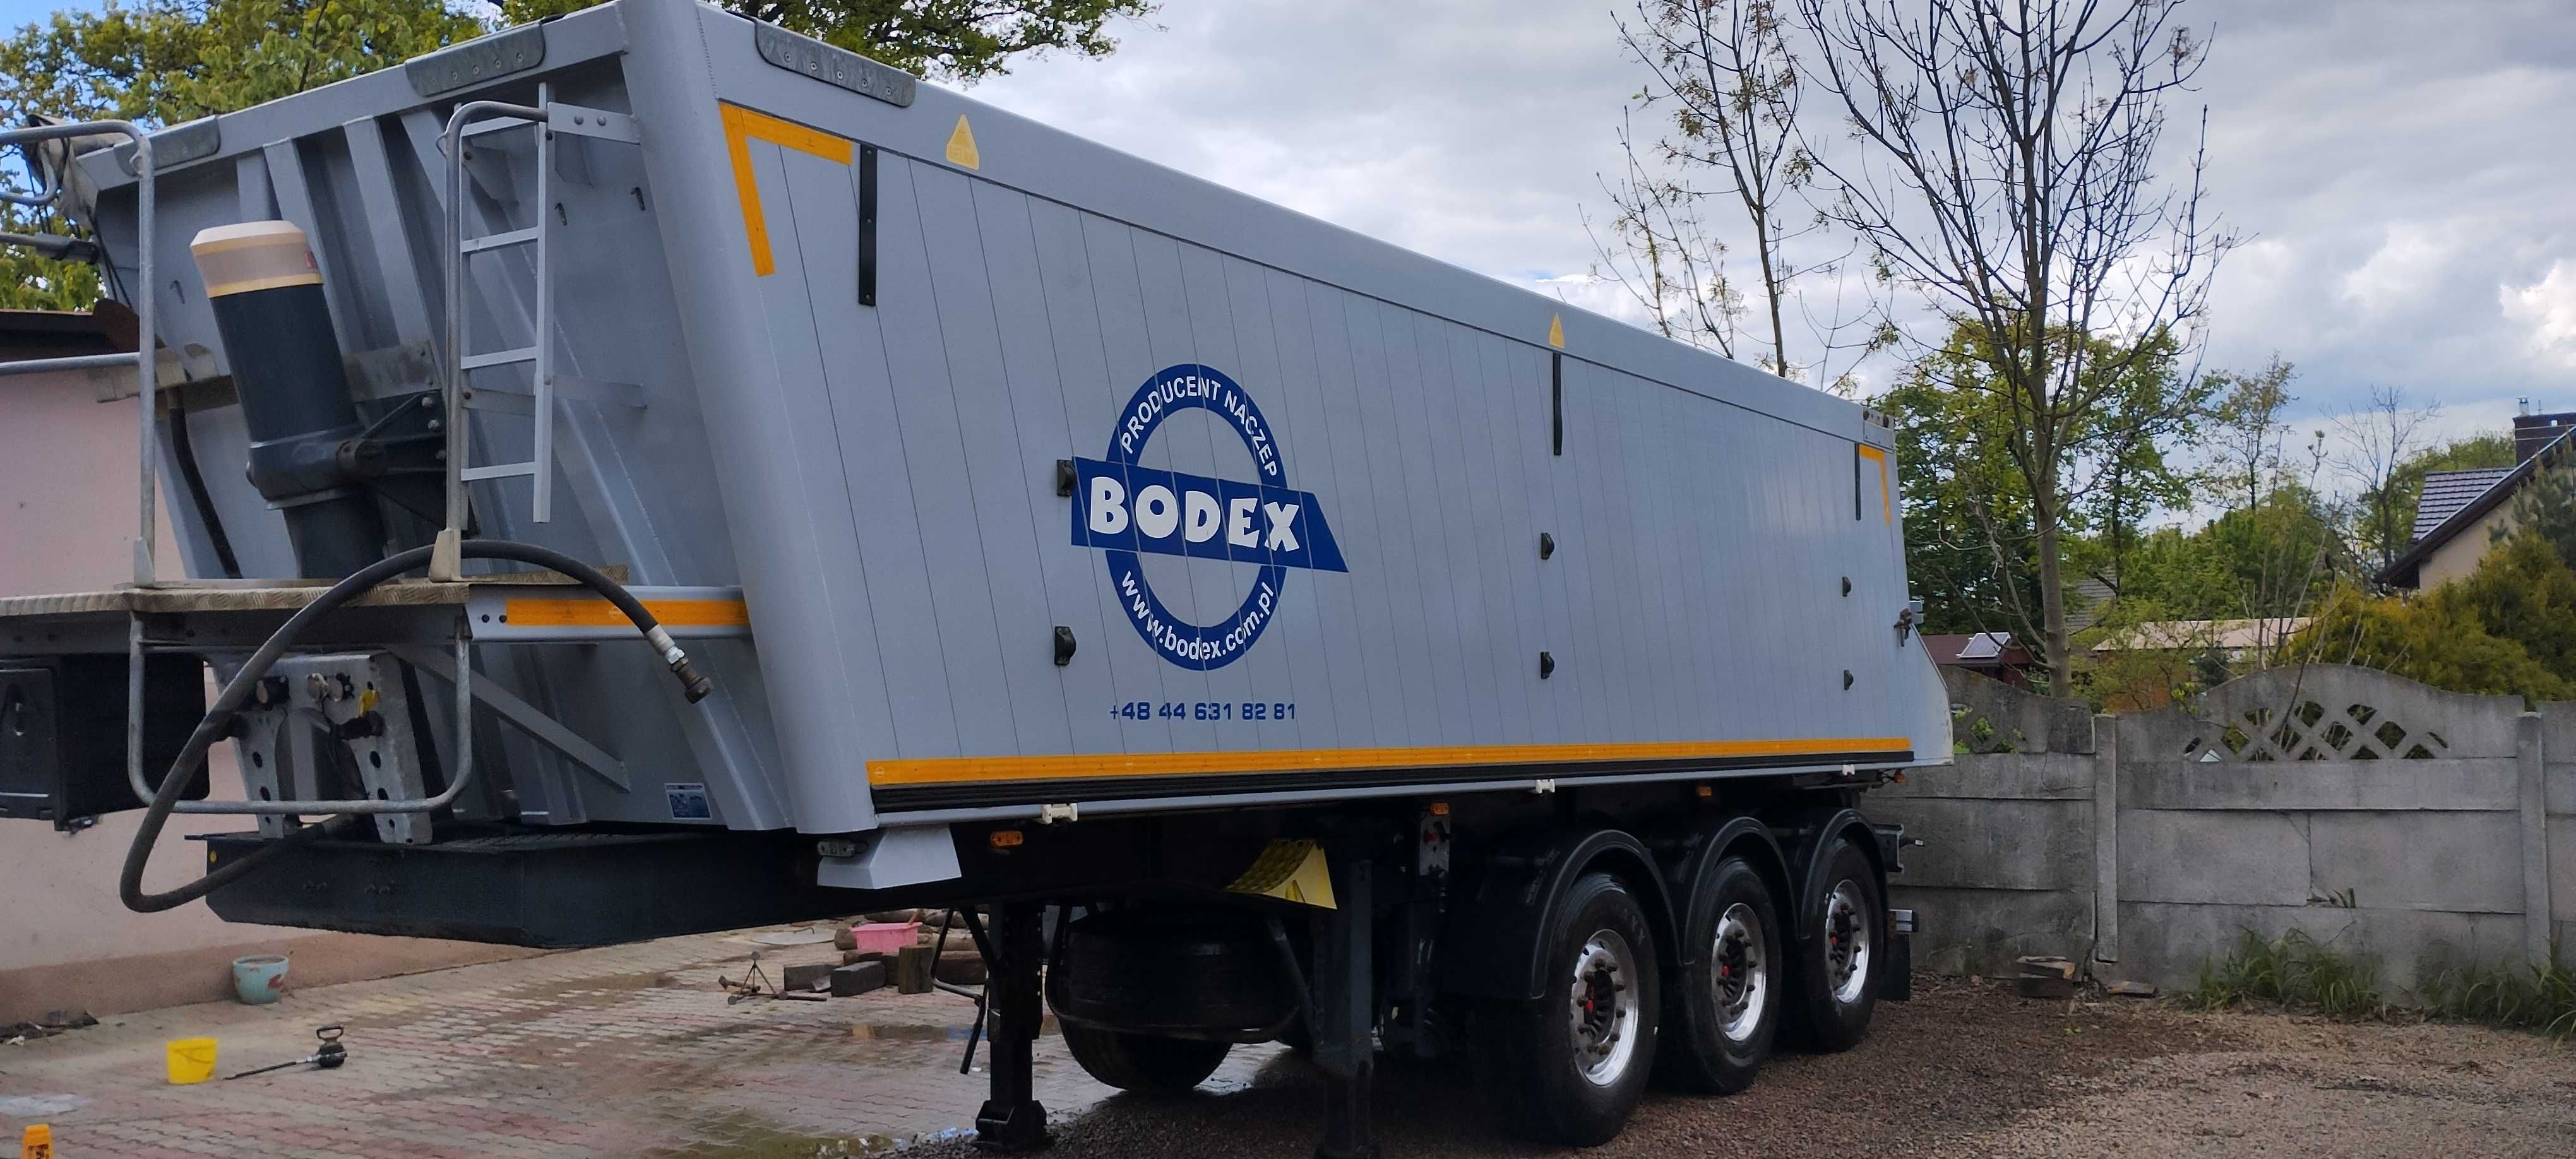 Naczepa Bodex 2018r. aluminium,wywrotka stan idealny